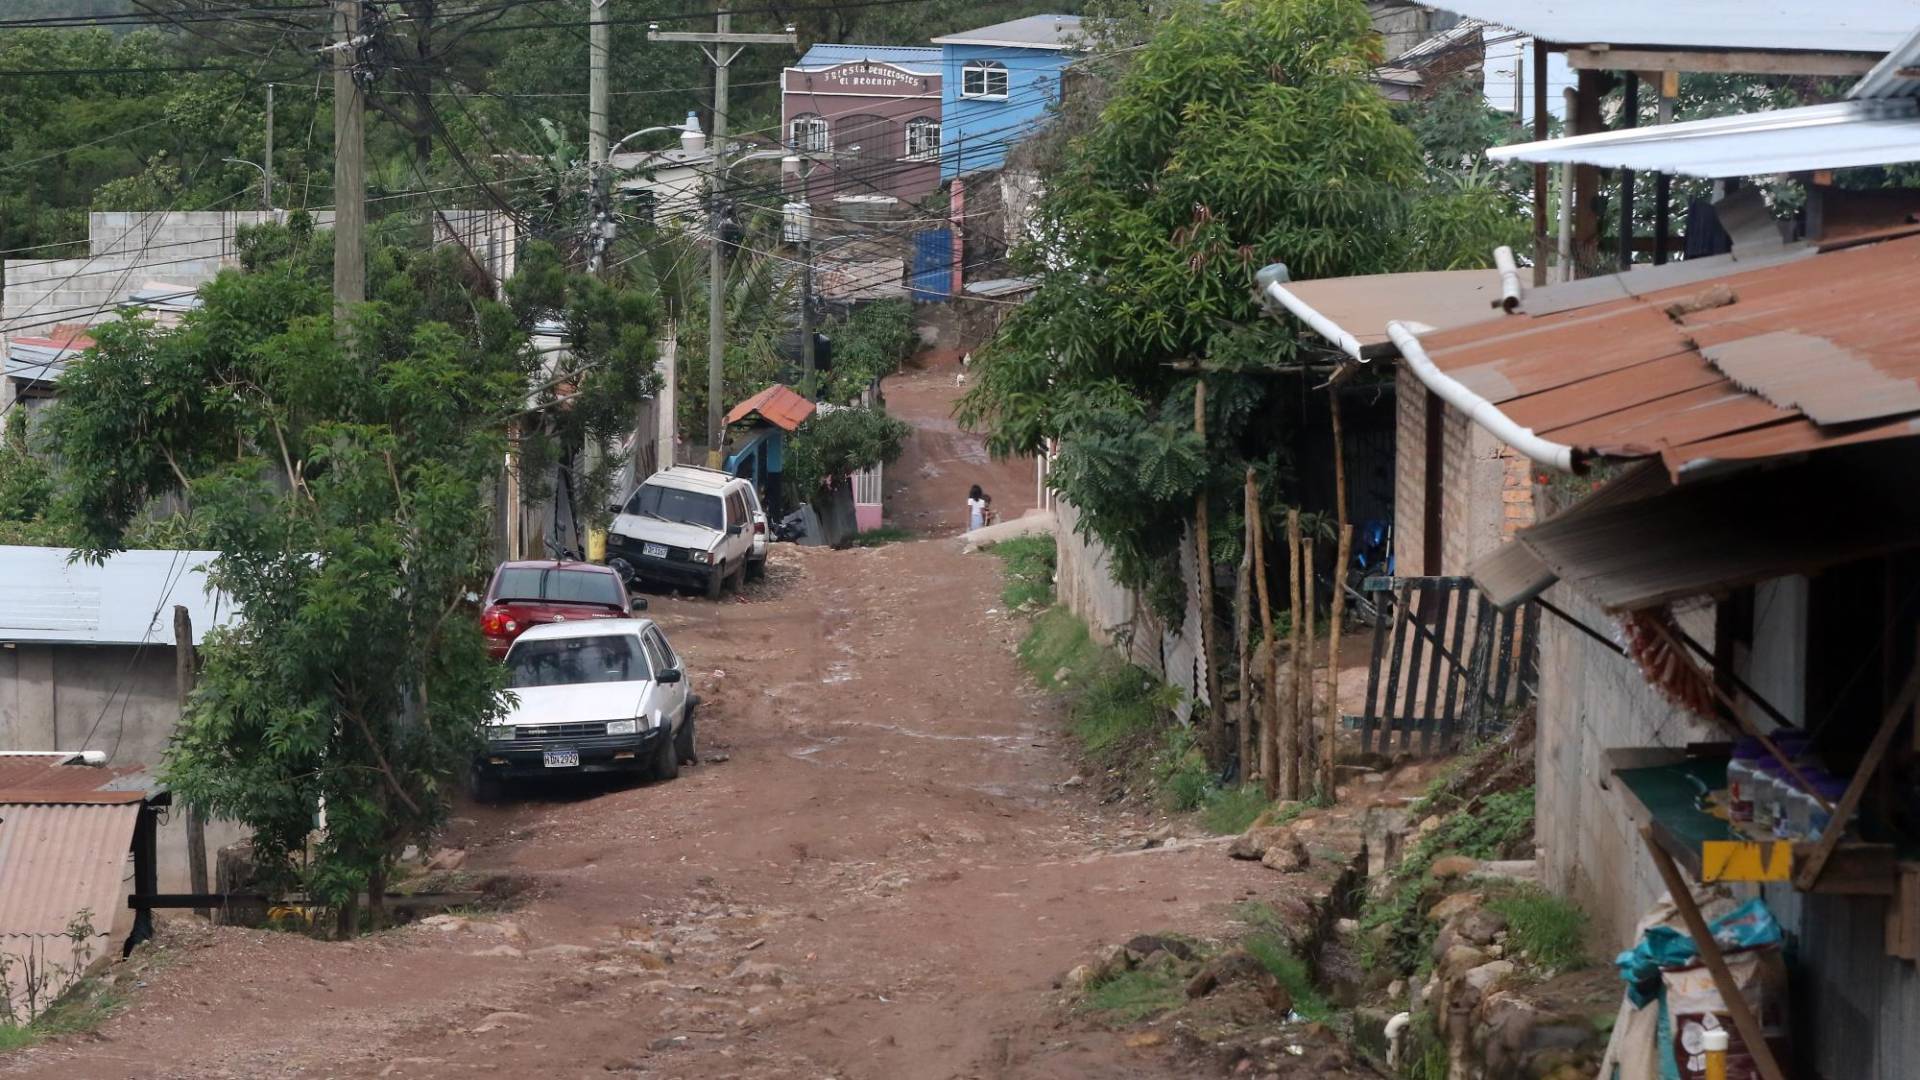 $!Esta calle de tierra despedazada conduce a la vivienda desde donde, según las autoridades, interceptaron a los cinco jóvenes que realizaban una mudanza desde residencial Honduras.